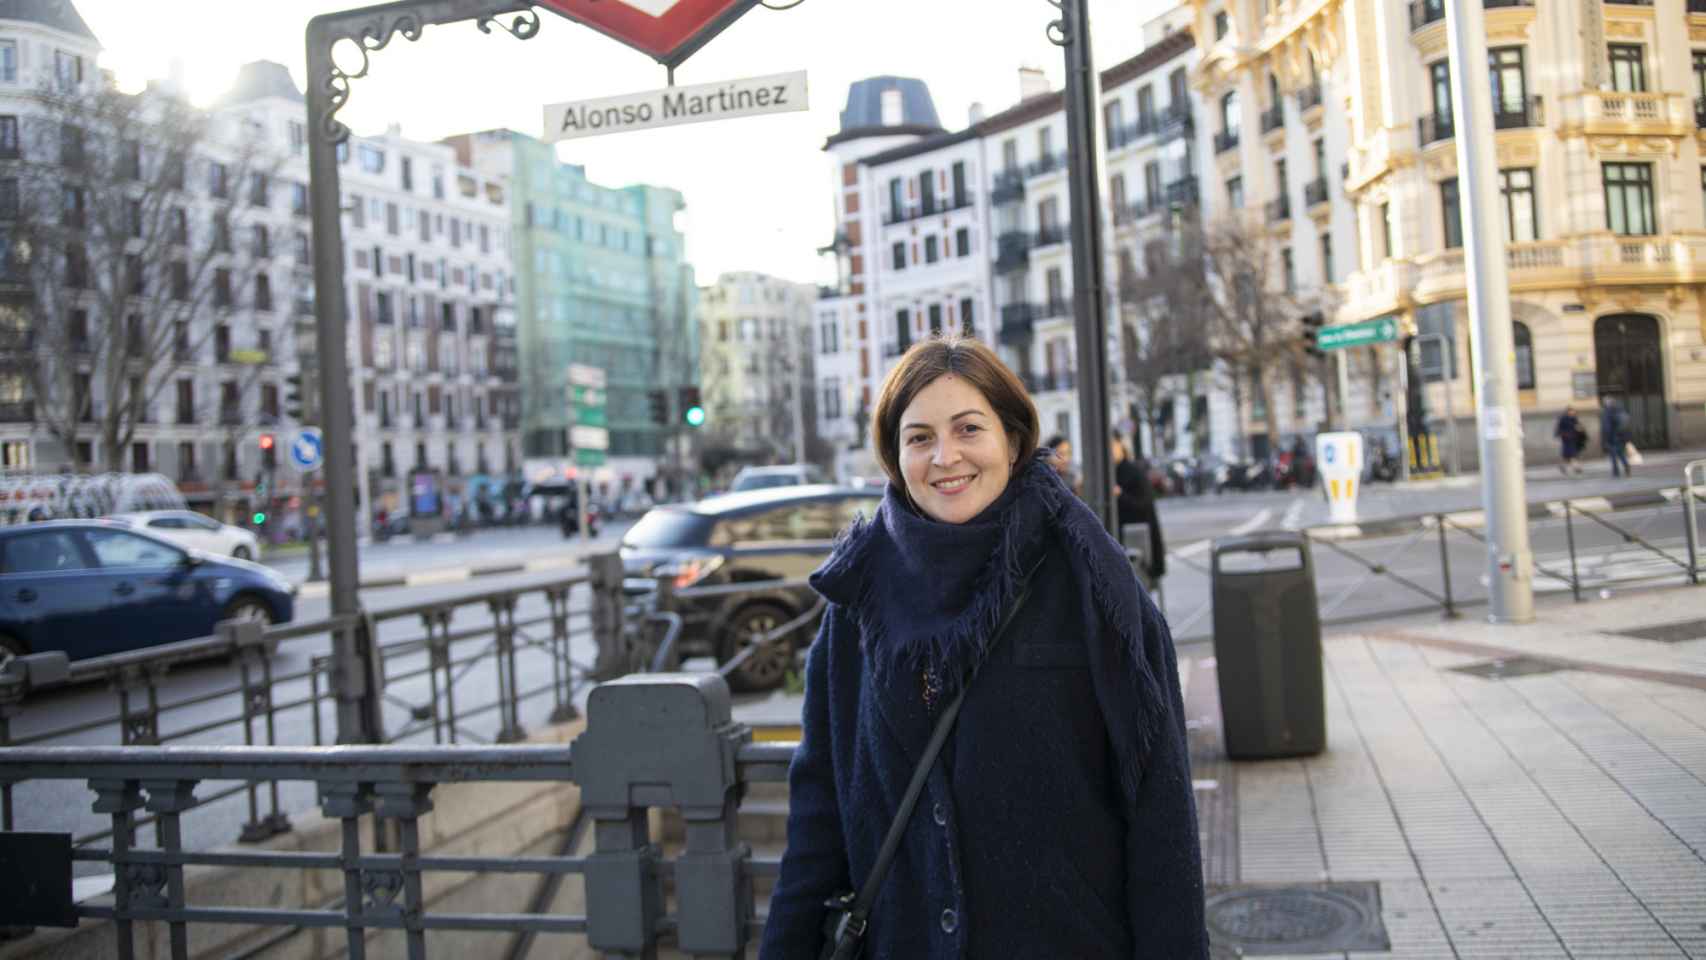 Zuriñe trabaja en Madrid como administrativa, está casada y tiene dos hijas.